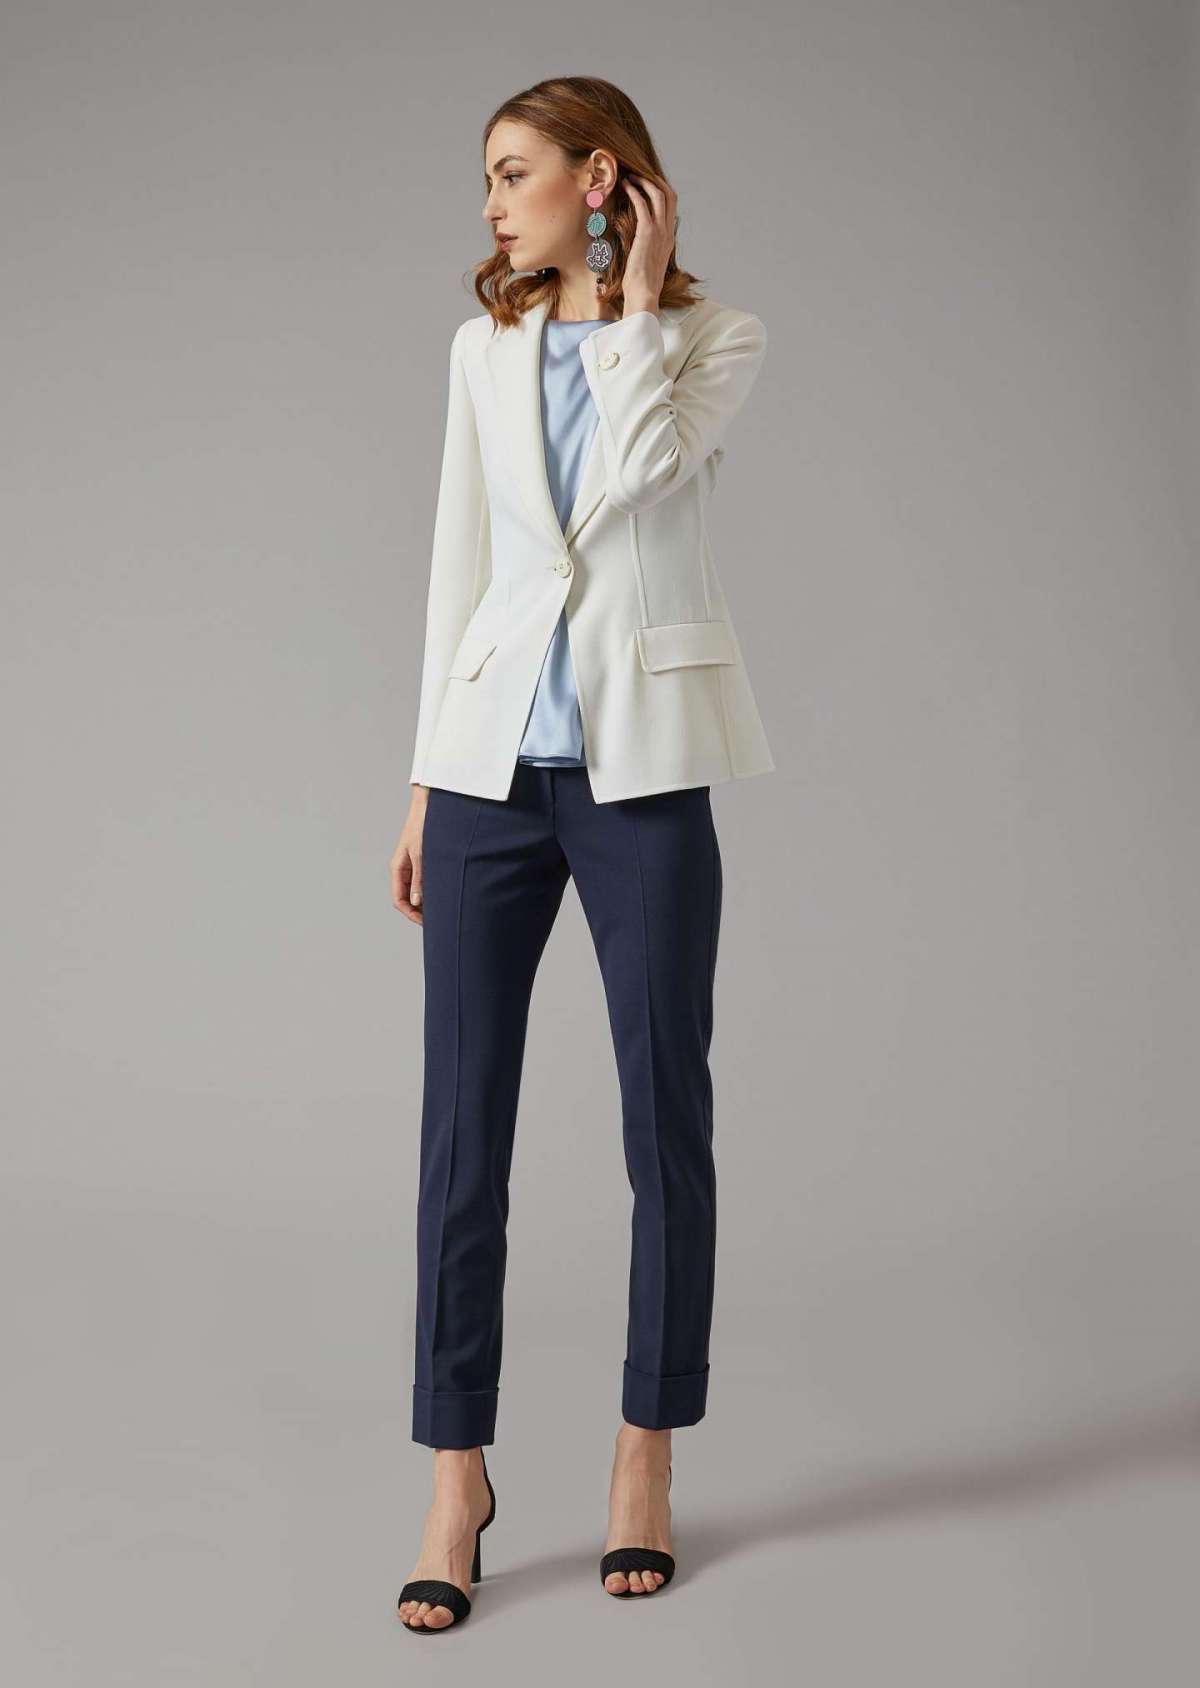 Completo con blazer bianco e pantaloni blu